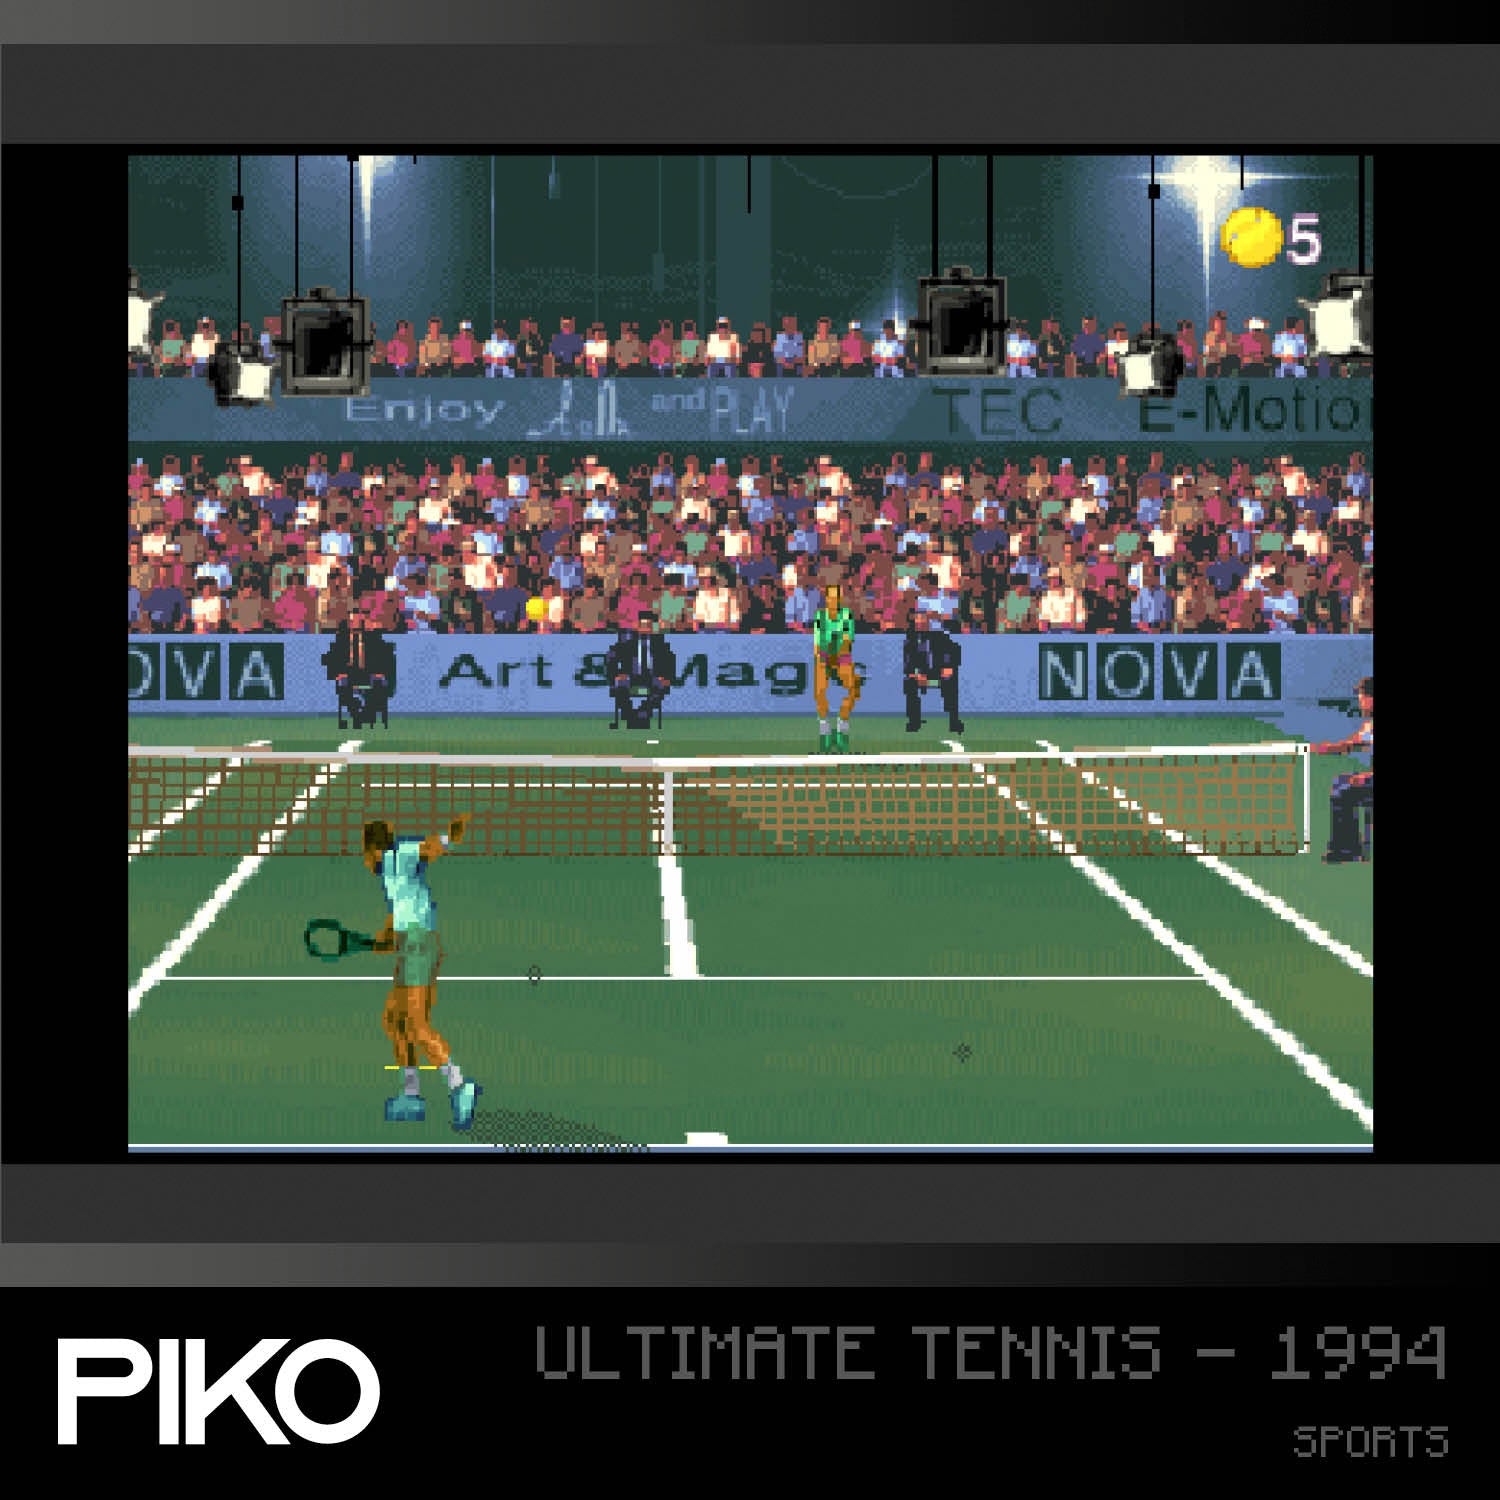 #10 Piko Arcade Collection 1 - Evercade Cartridge